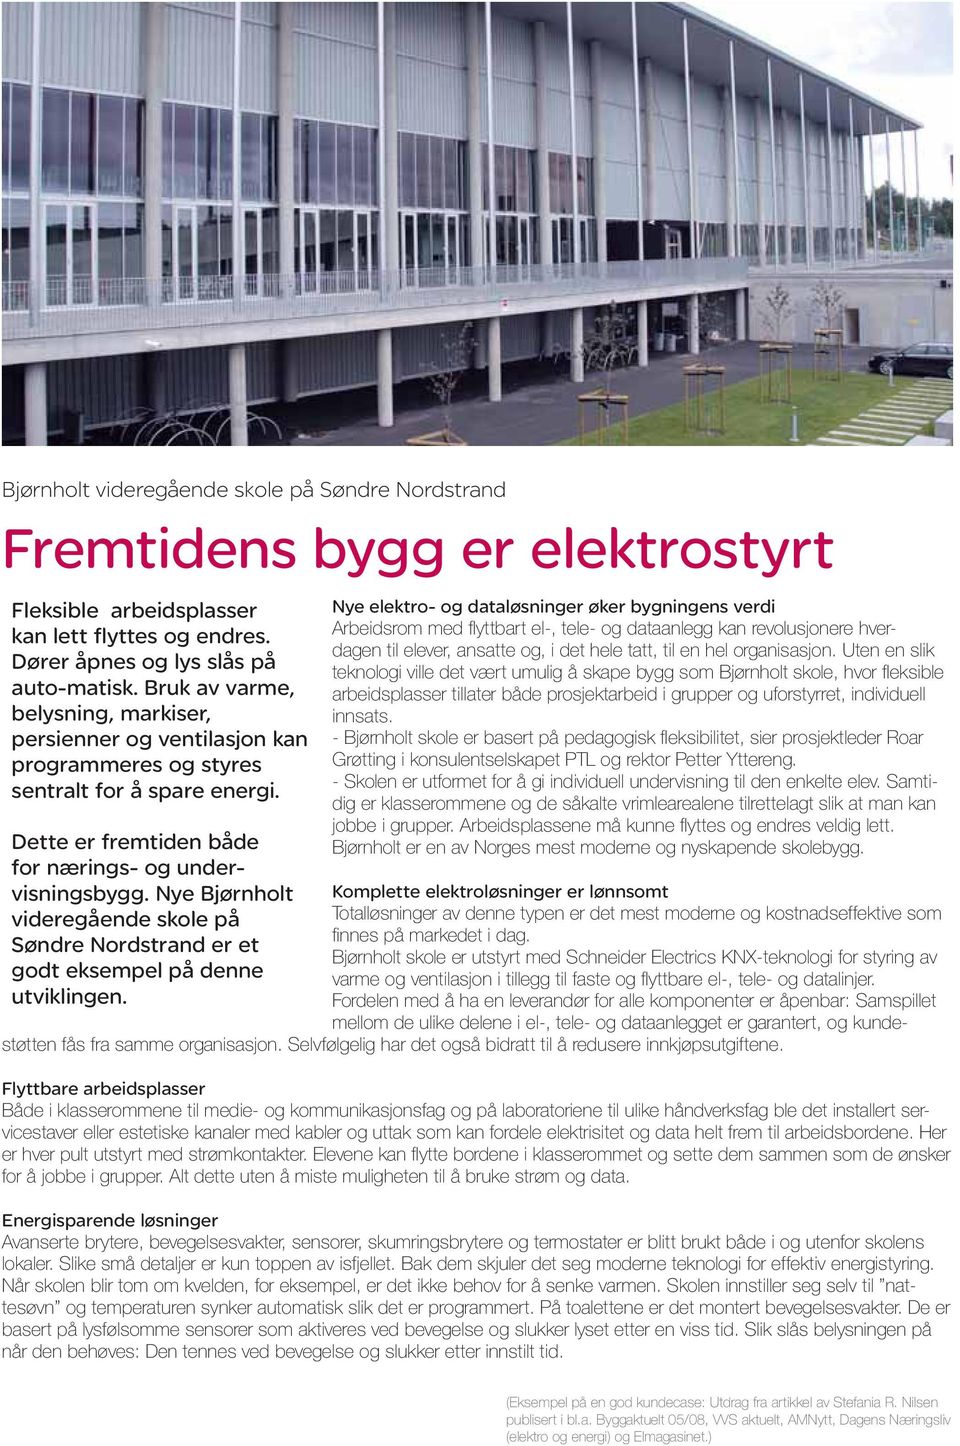 Nye Bjørnholt videregående skole på Søndre Nordstrand er et godt eksempel på denne utviklingen.